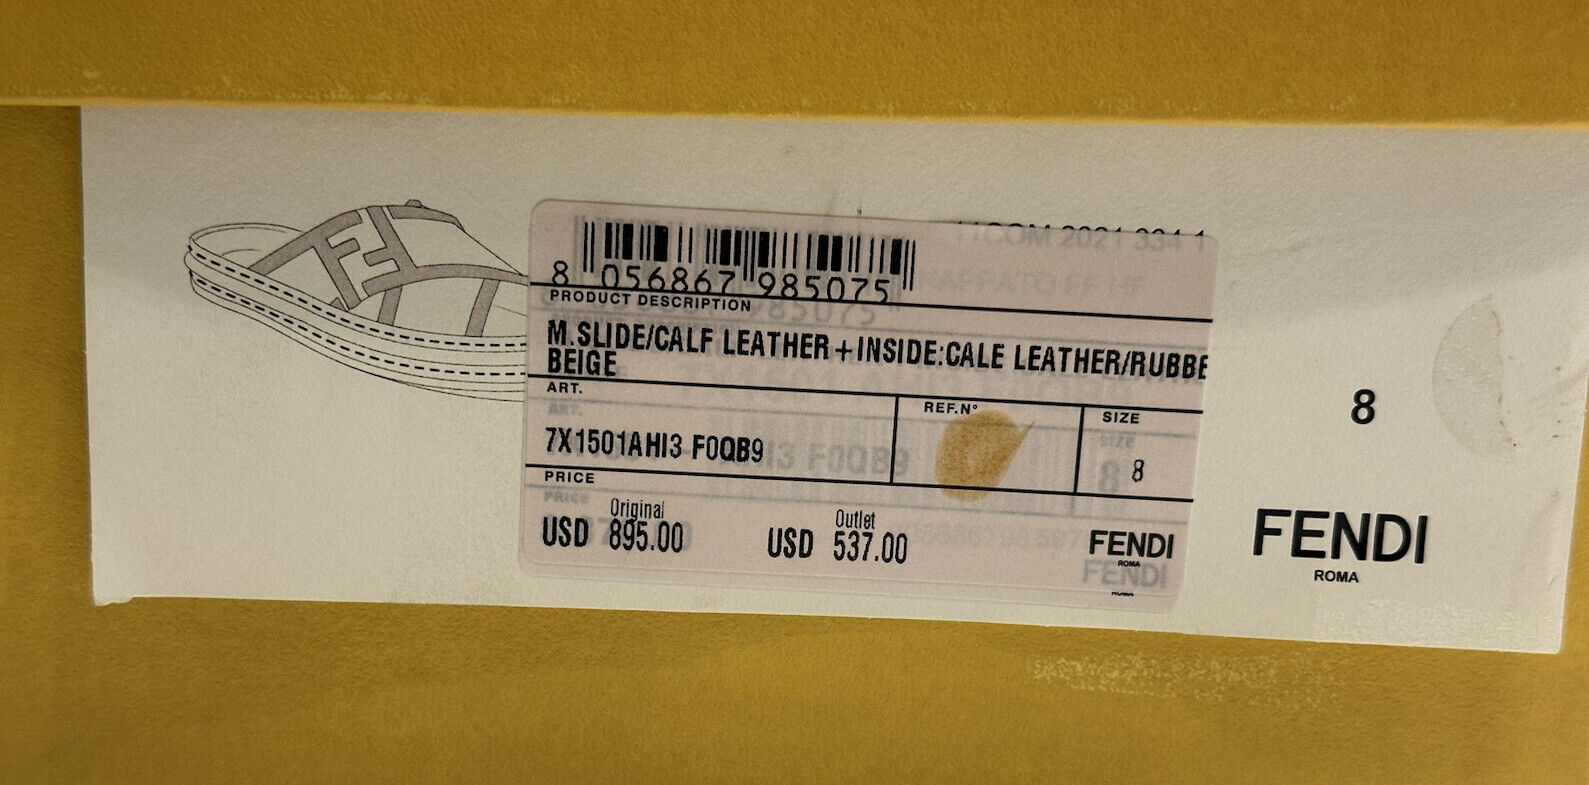 NIB Мужские шлепанцы Fendi FF из телячьей кожи 895 долларов США, бежевые 9 US/8UK 7X1501 IT